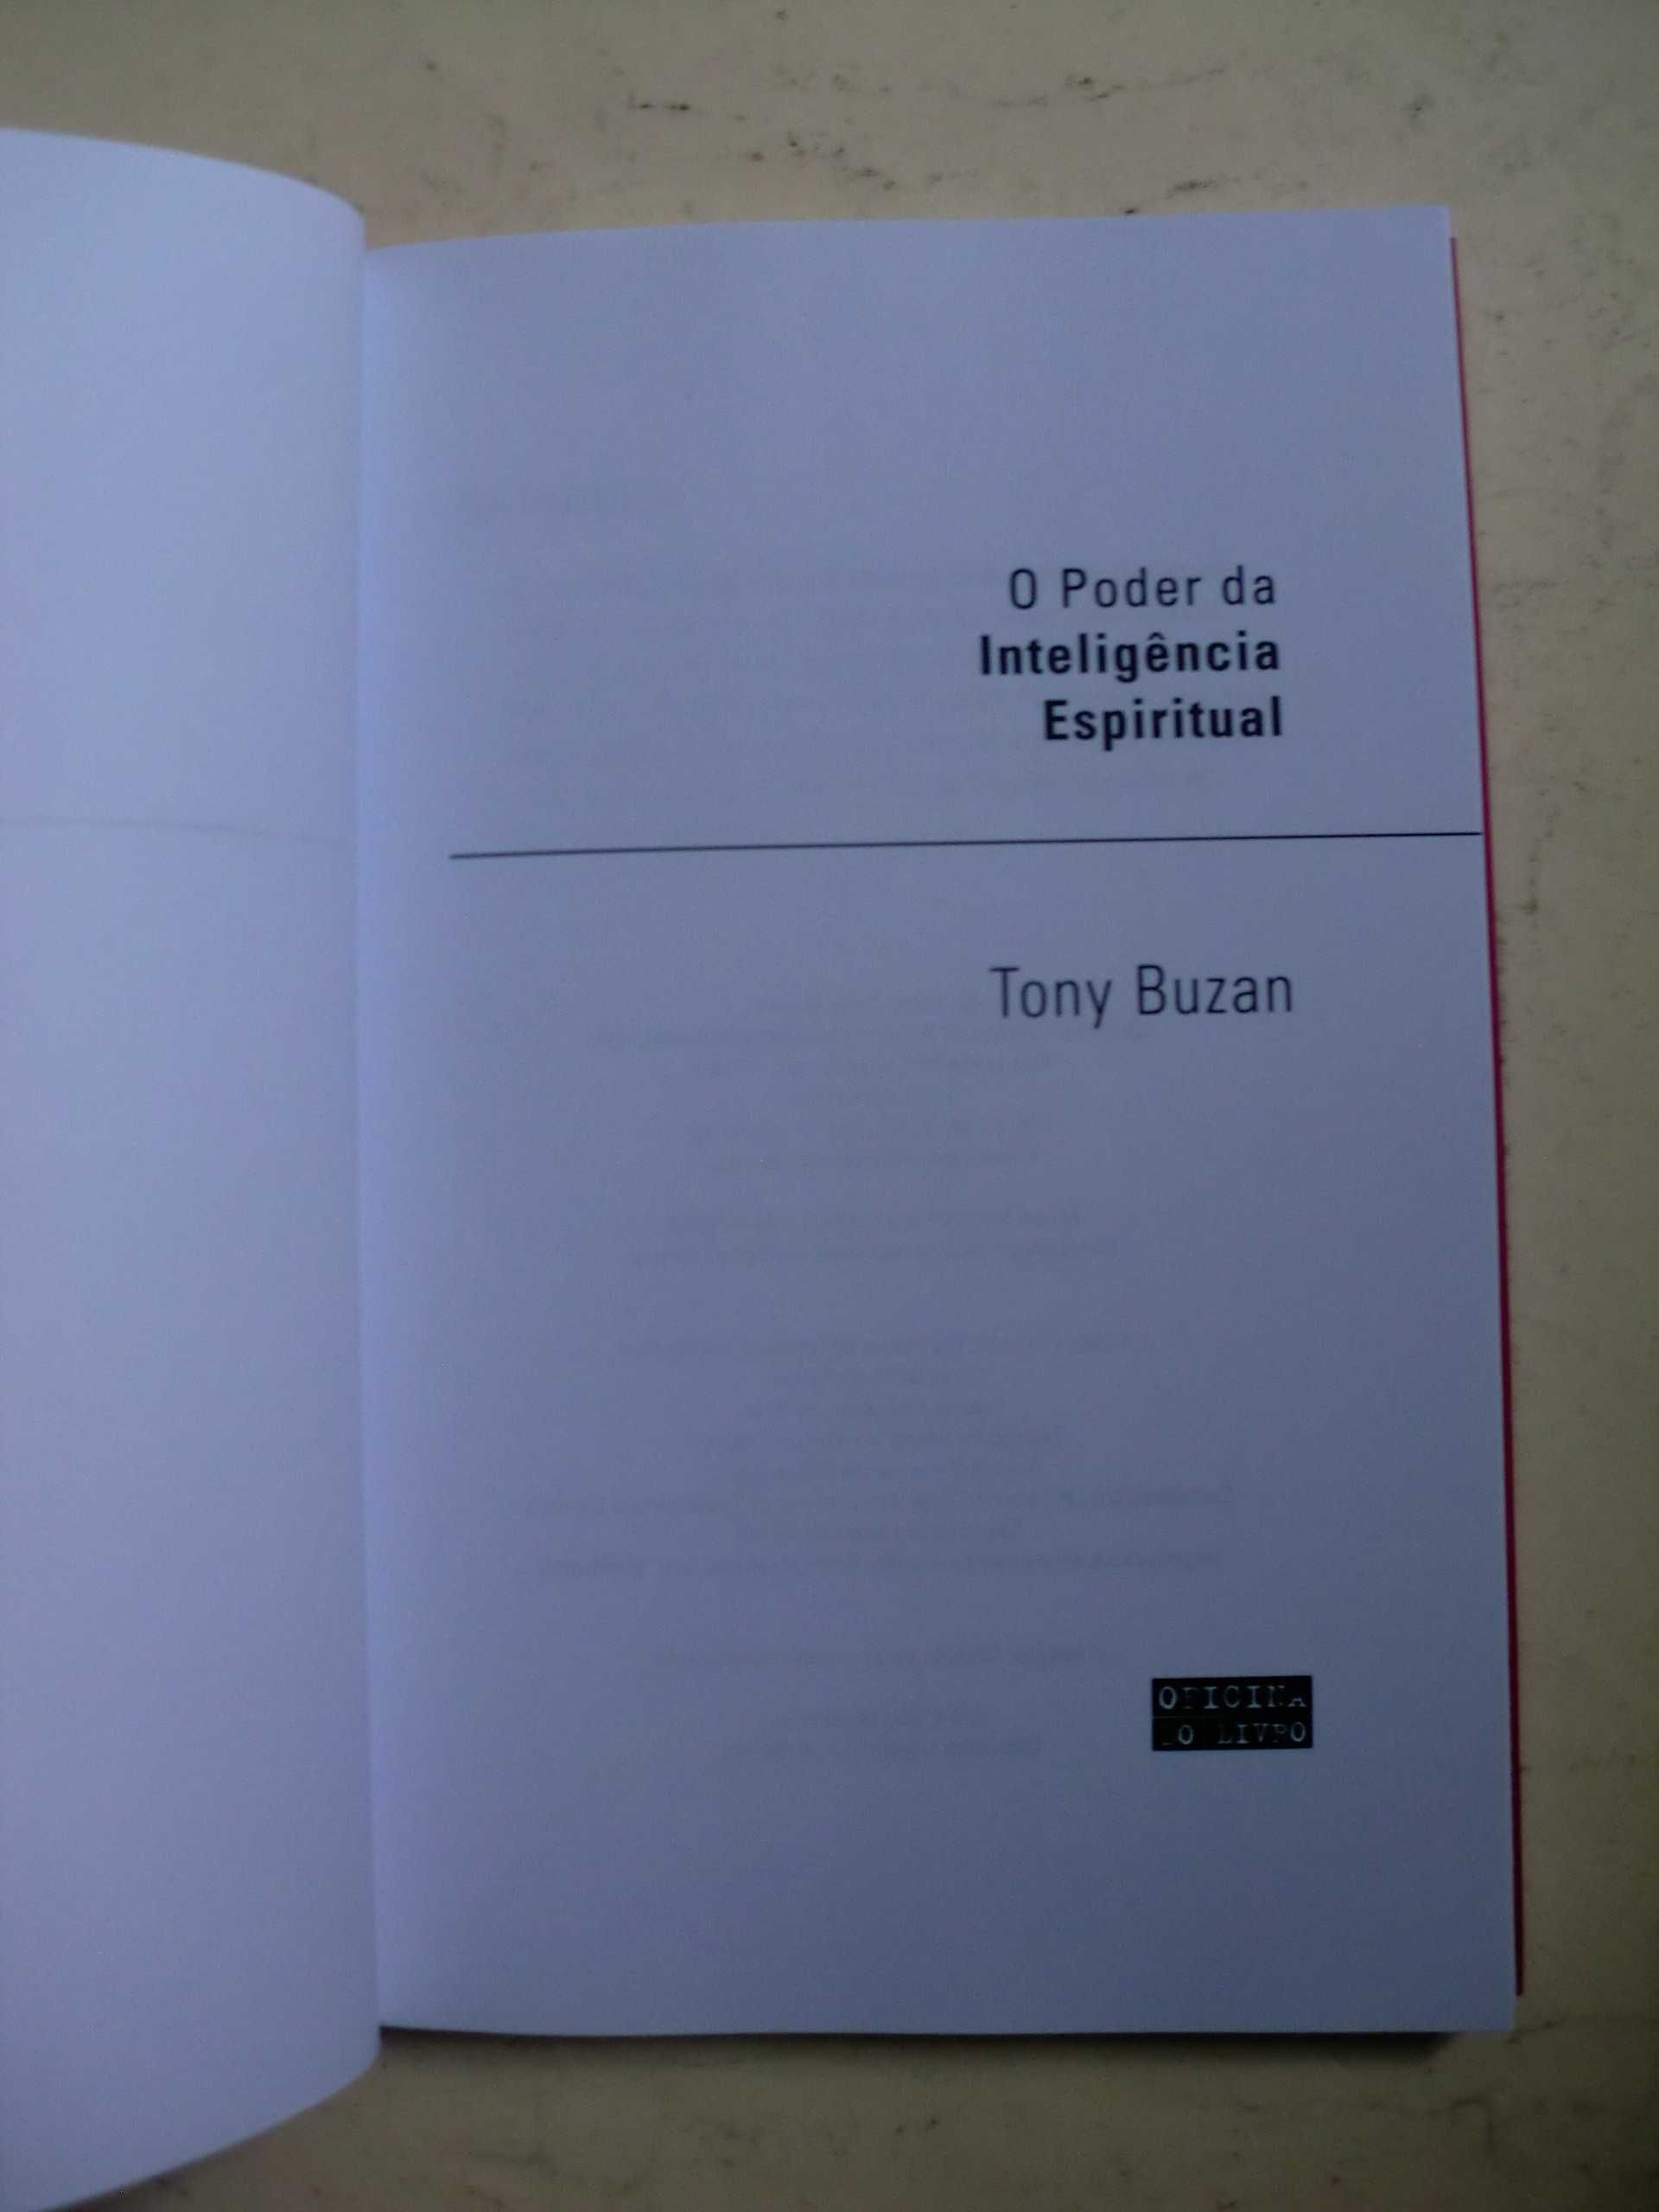 O Poder da Inteligência Espiritual
de Tony Buzan